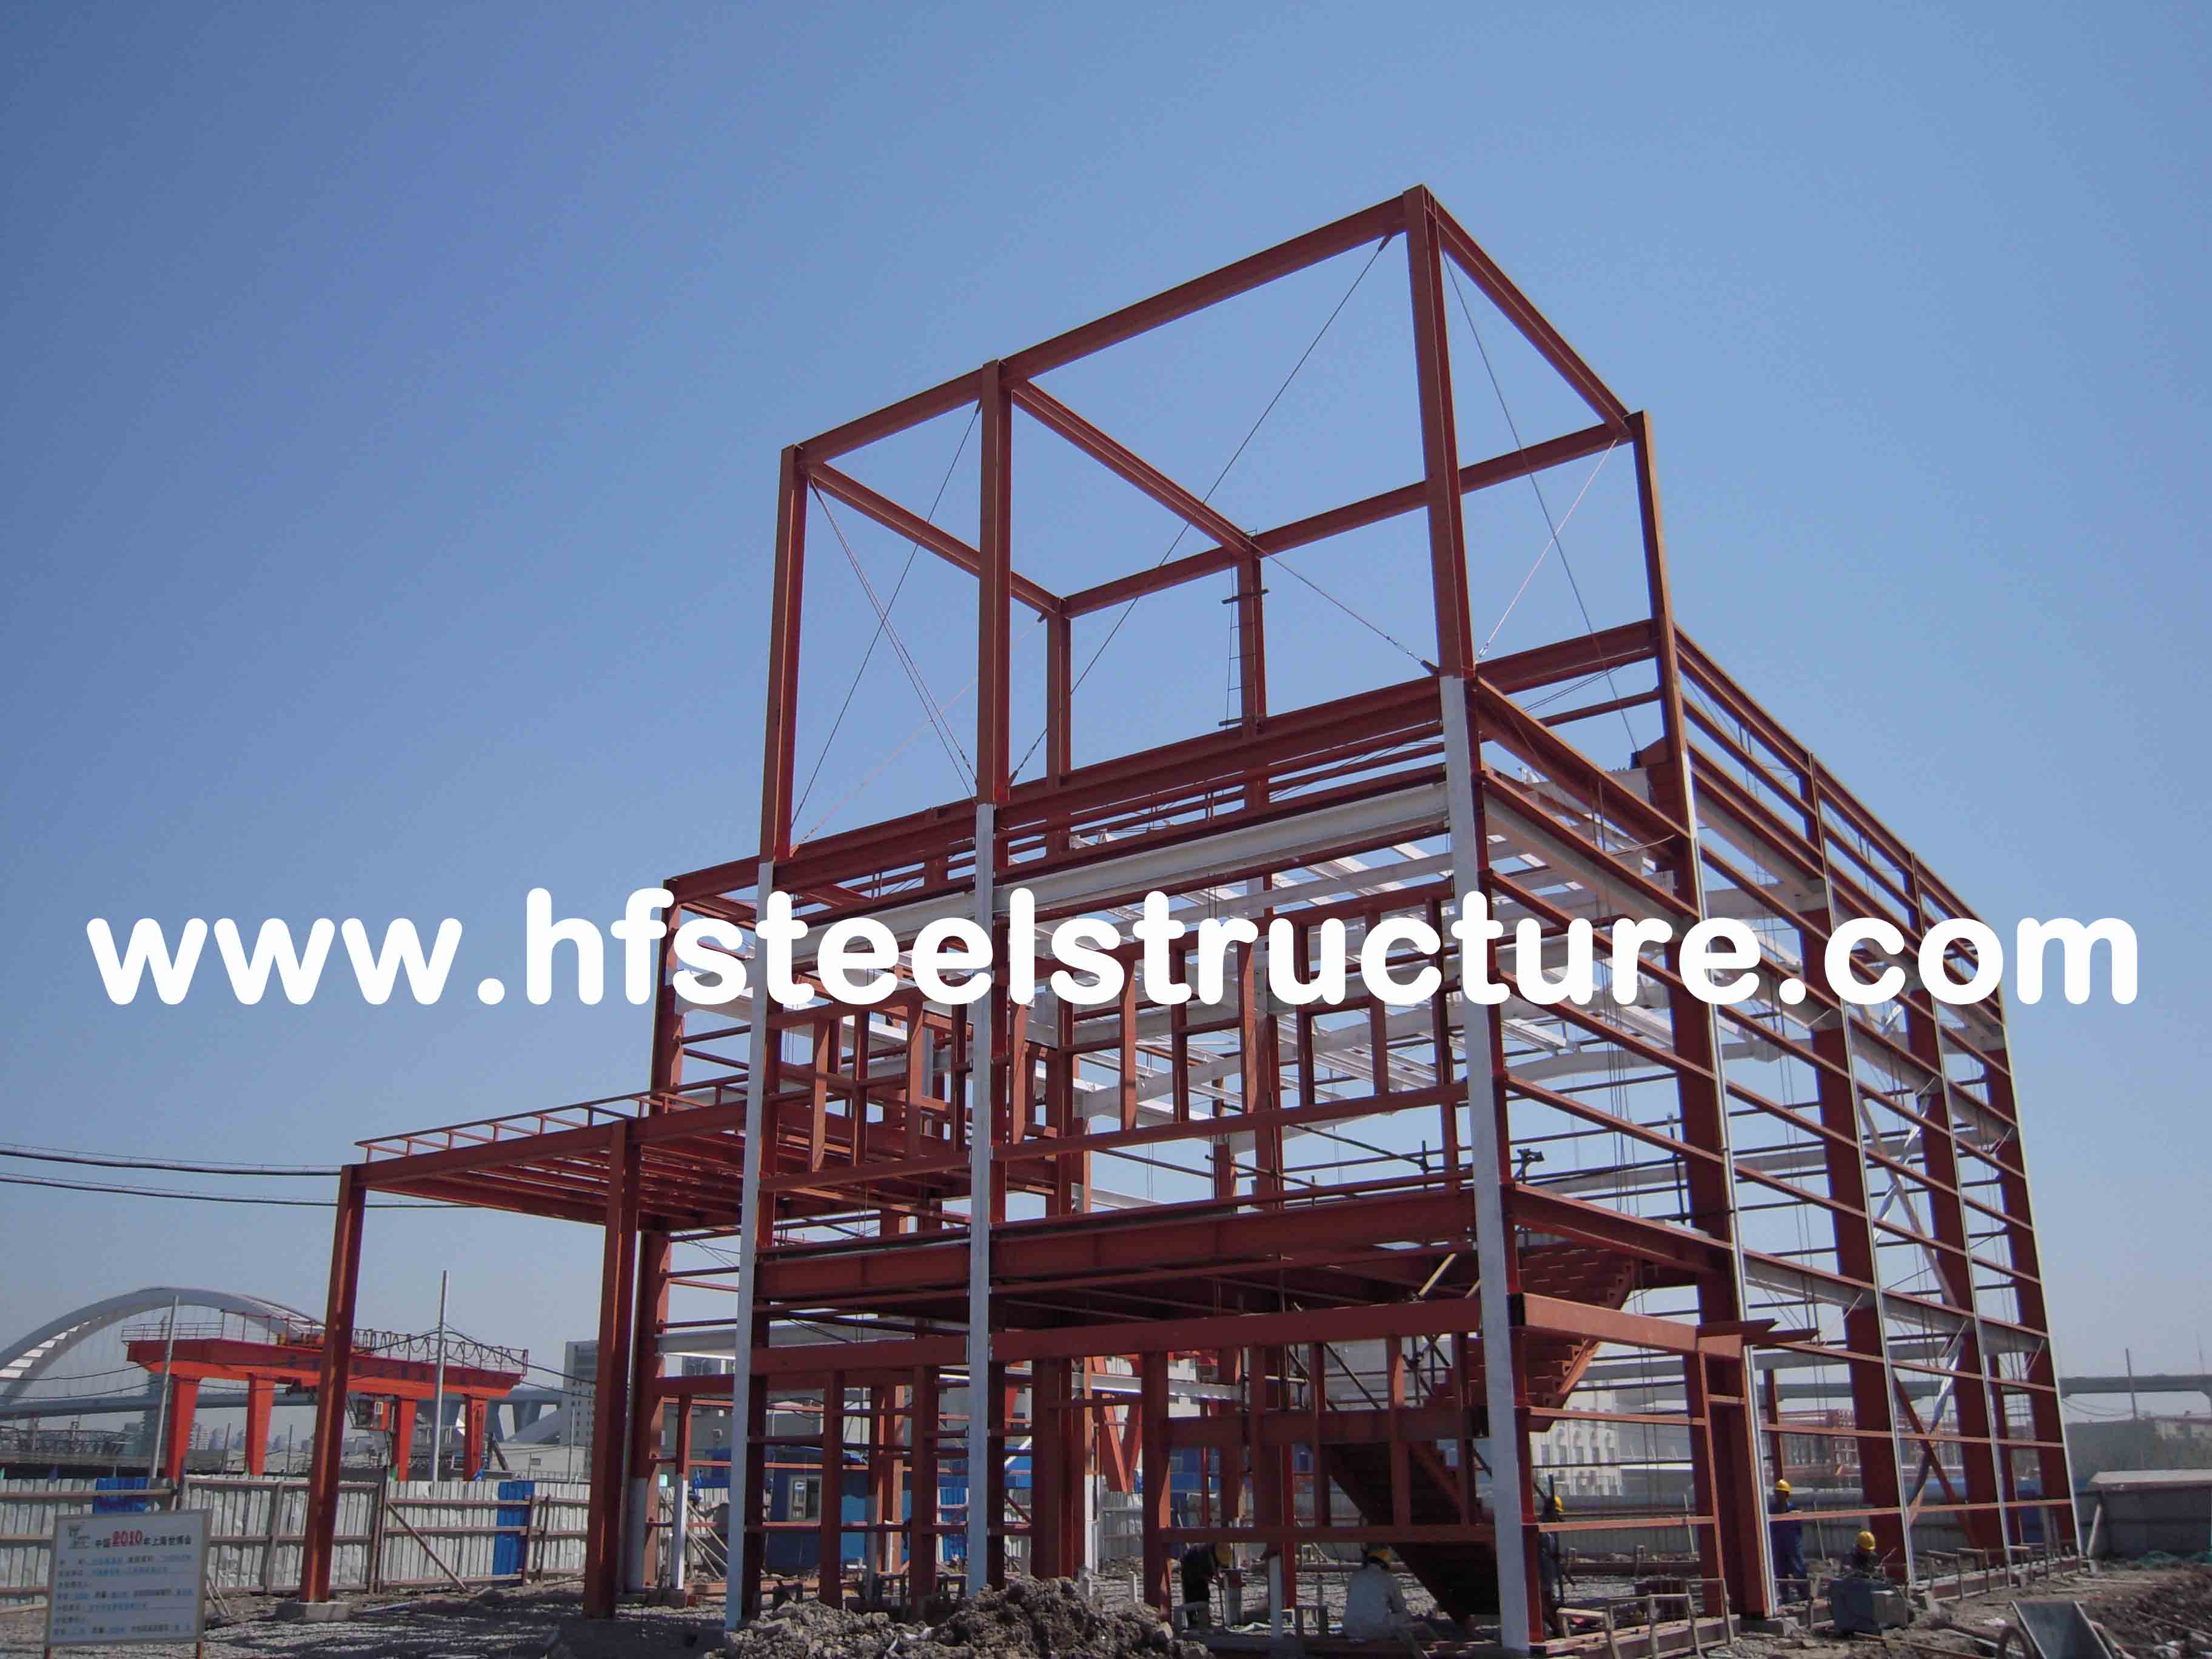 Natatorium de aço comercial industrial pesado moderno das construções no ginásio